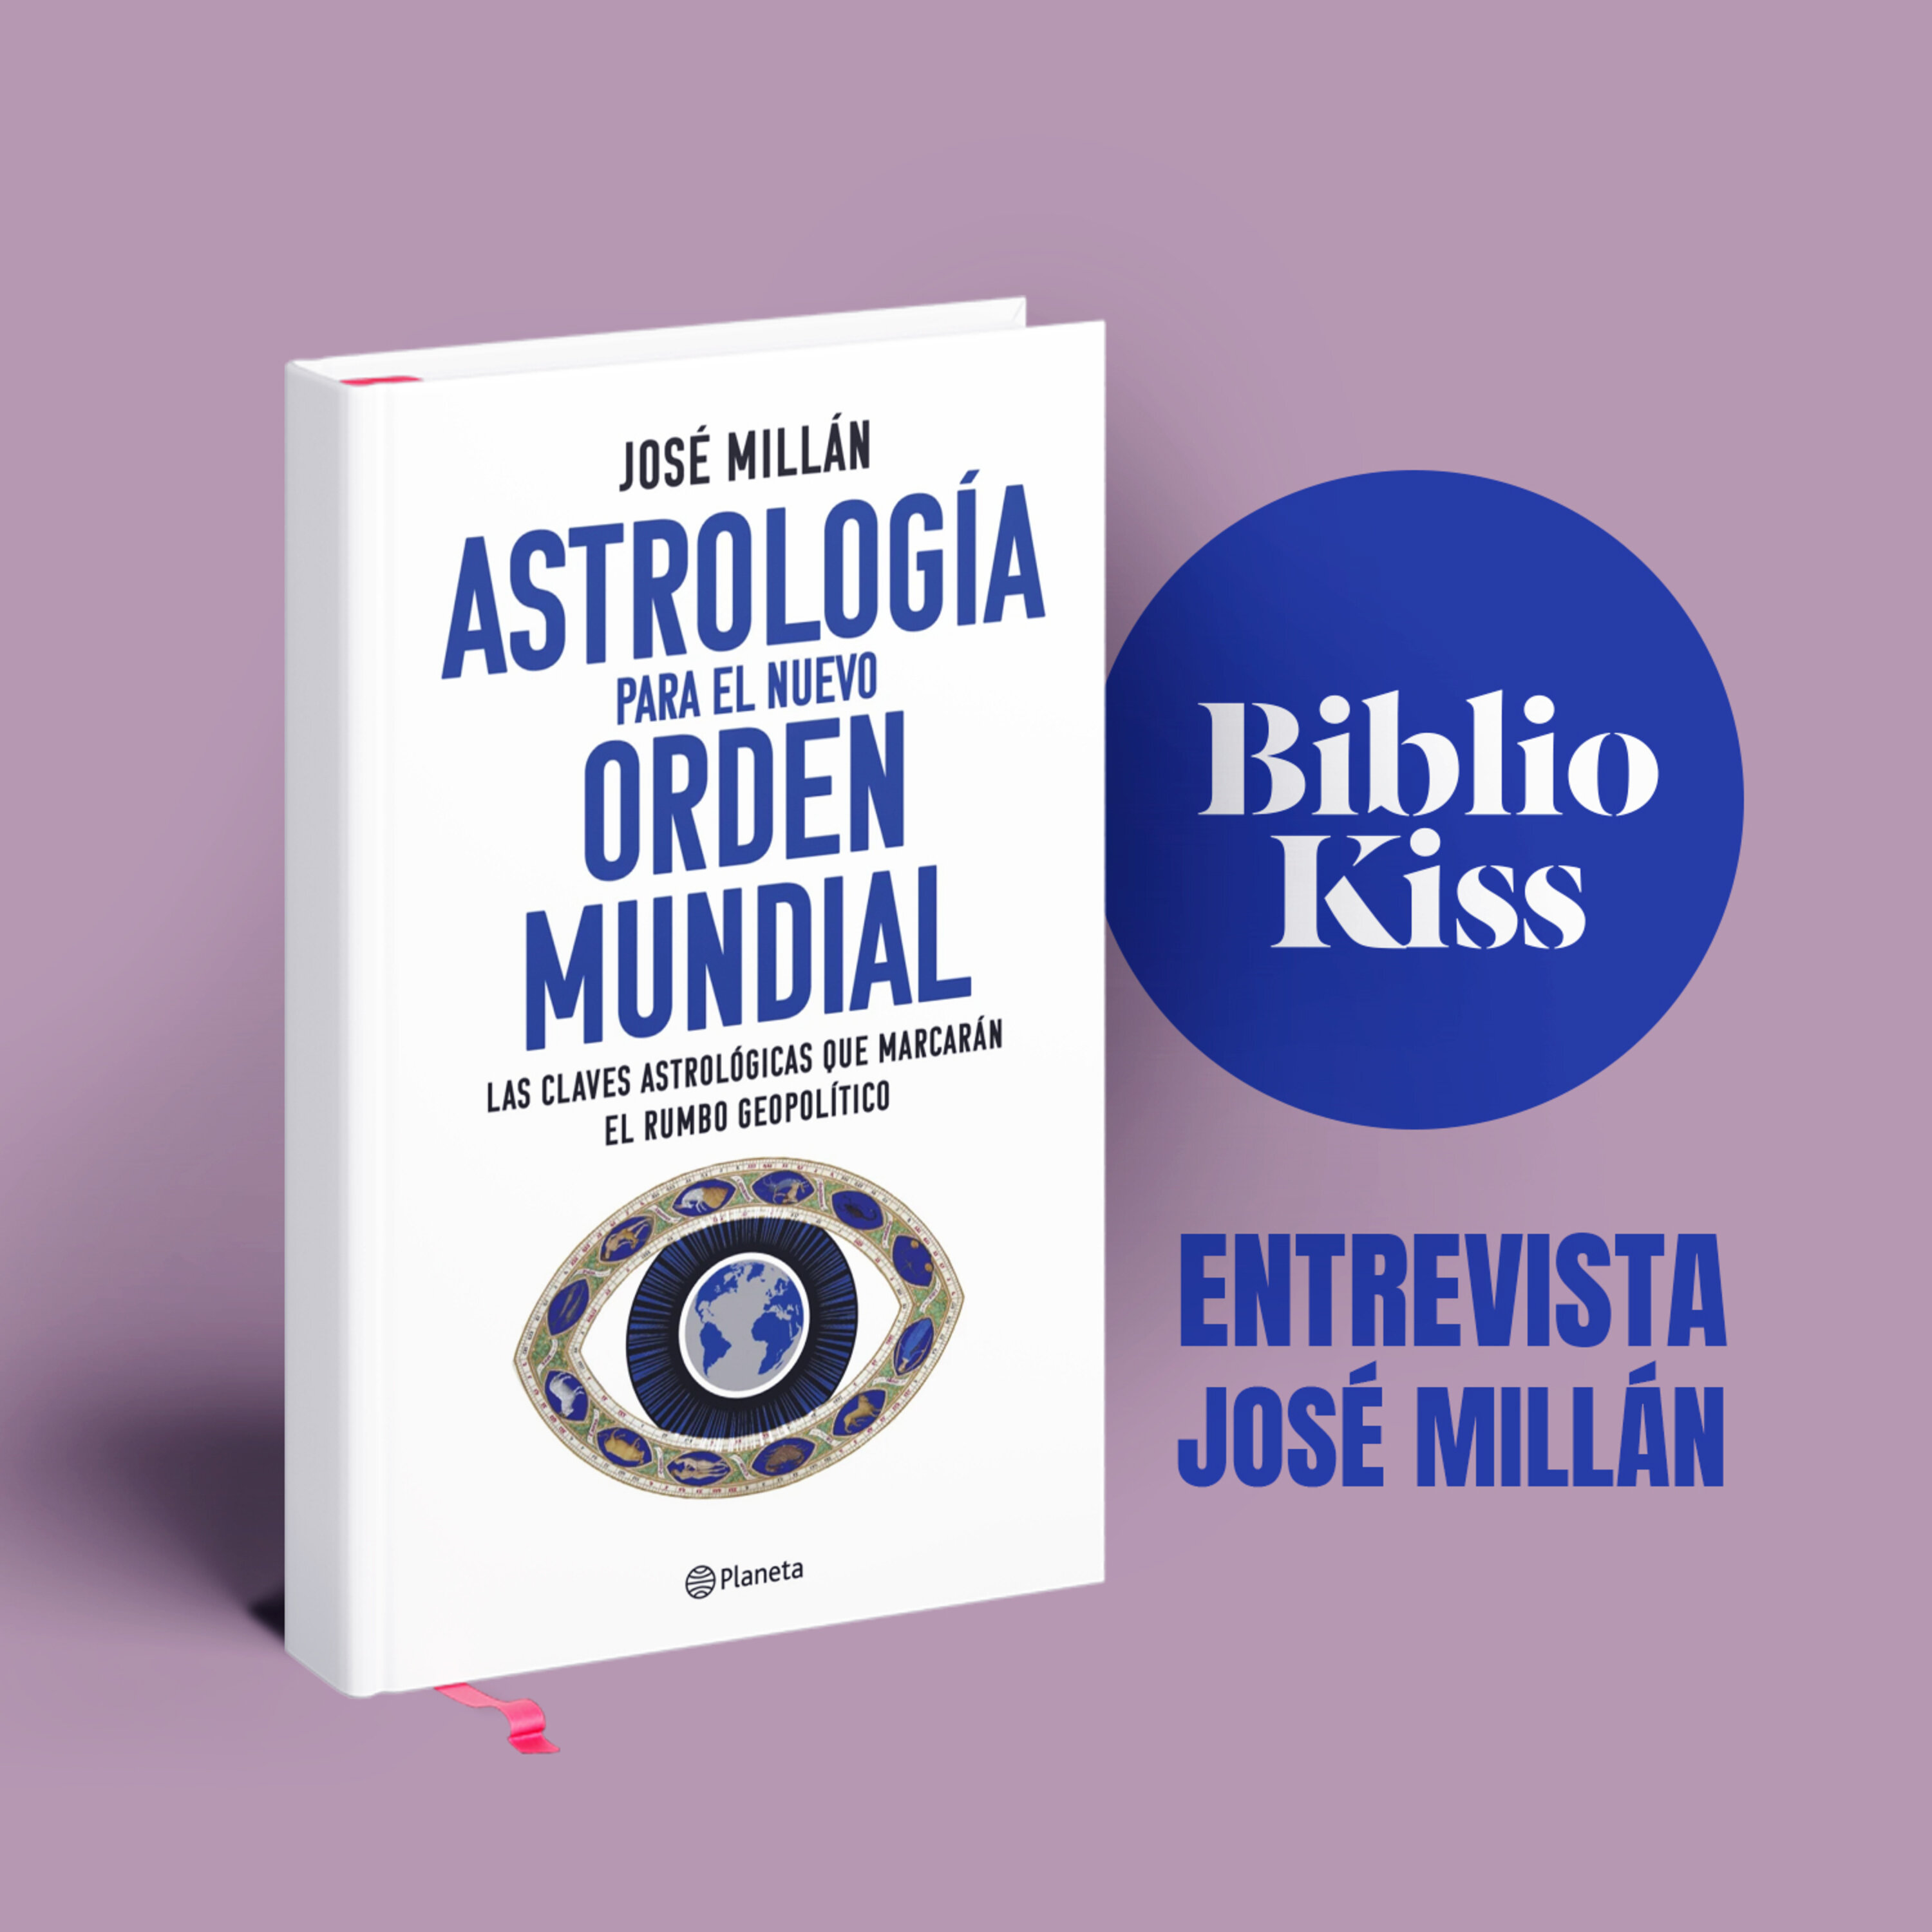 José Millán nos presenta su "Astrología para el nuevo orden mundial"